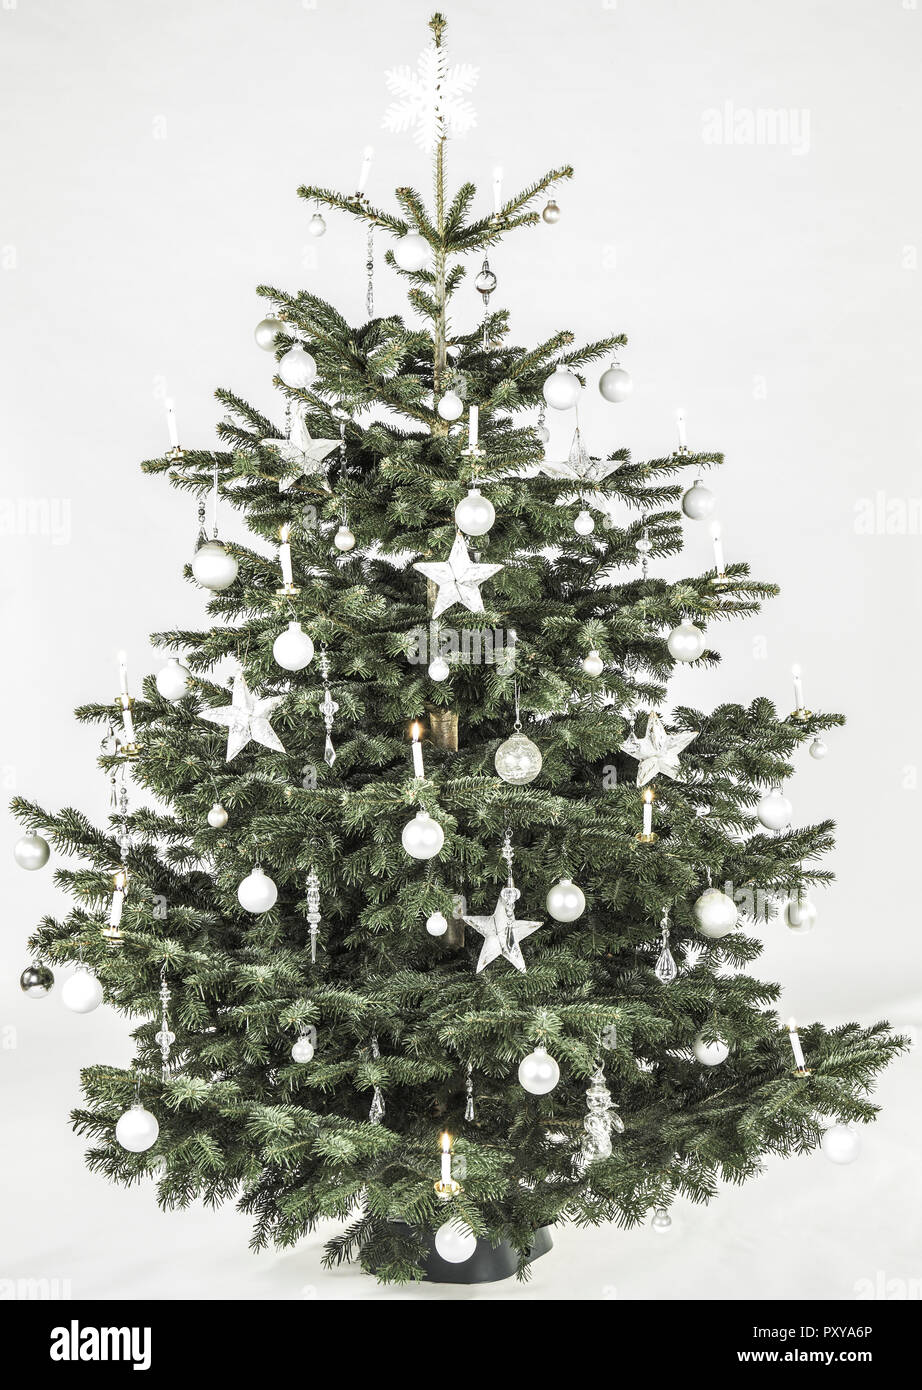 Weihnachtsbaum, weiss geschmueckt Stock Photo